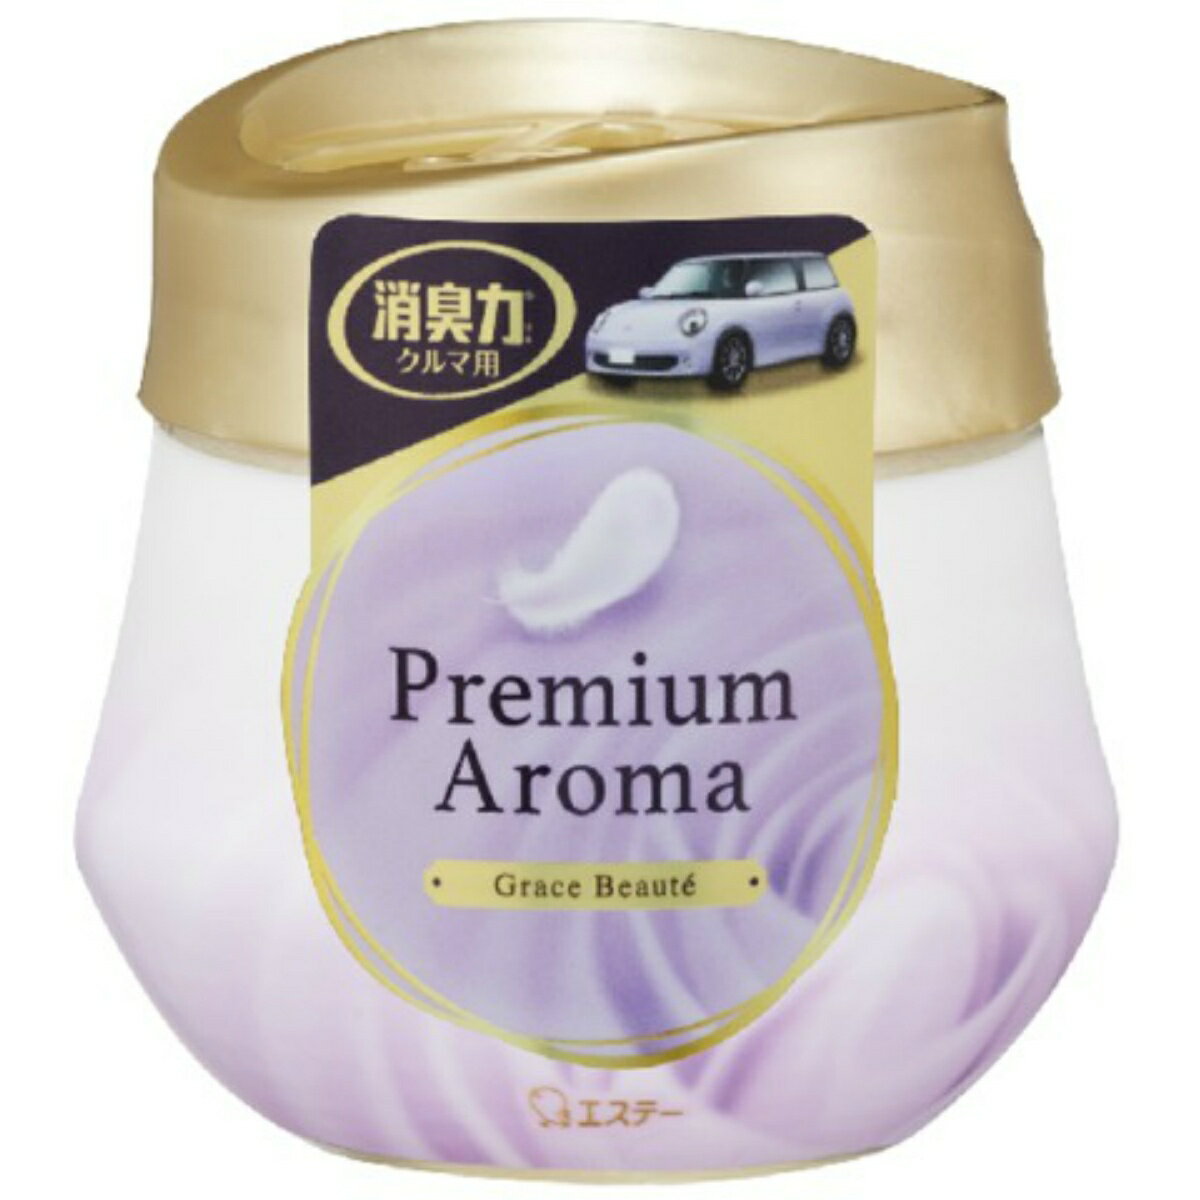 エステー 消臭力 クルマ用 Premium Aroma プレミアム アロマ ゲルタイプ グレイスボーテ 90g